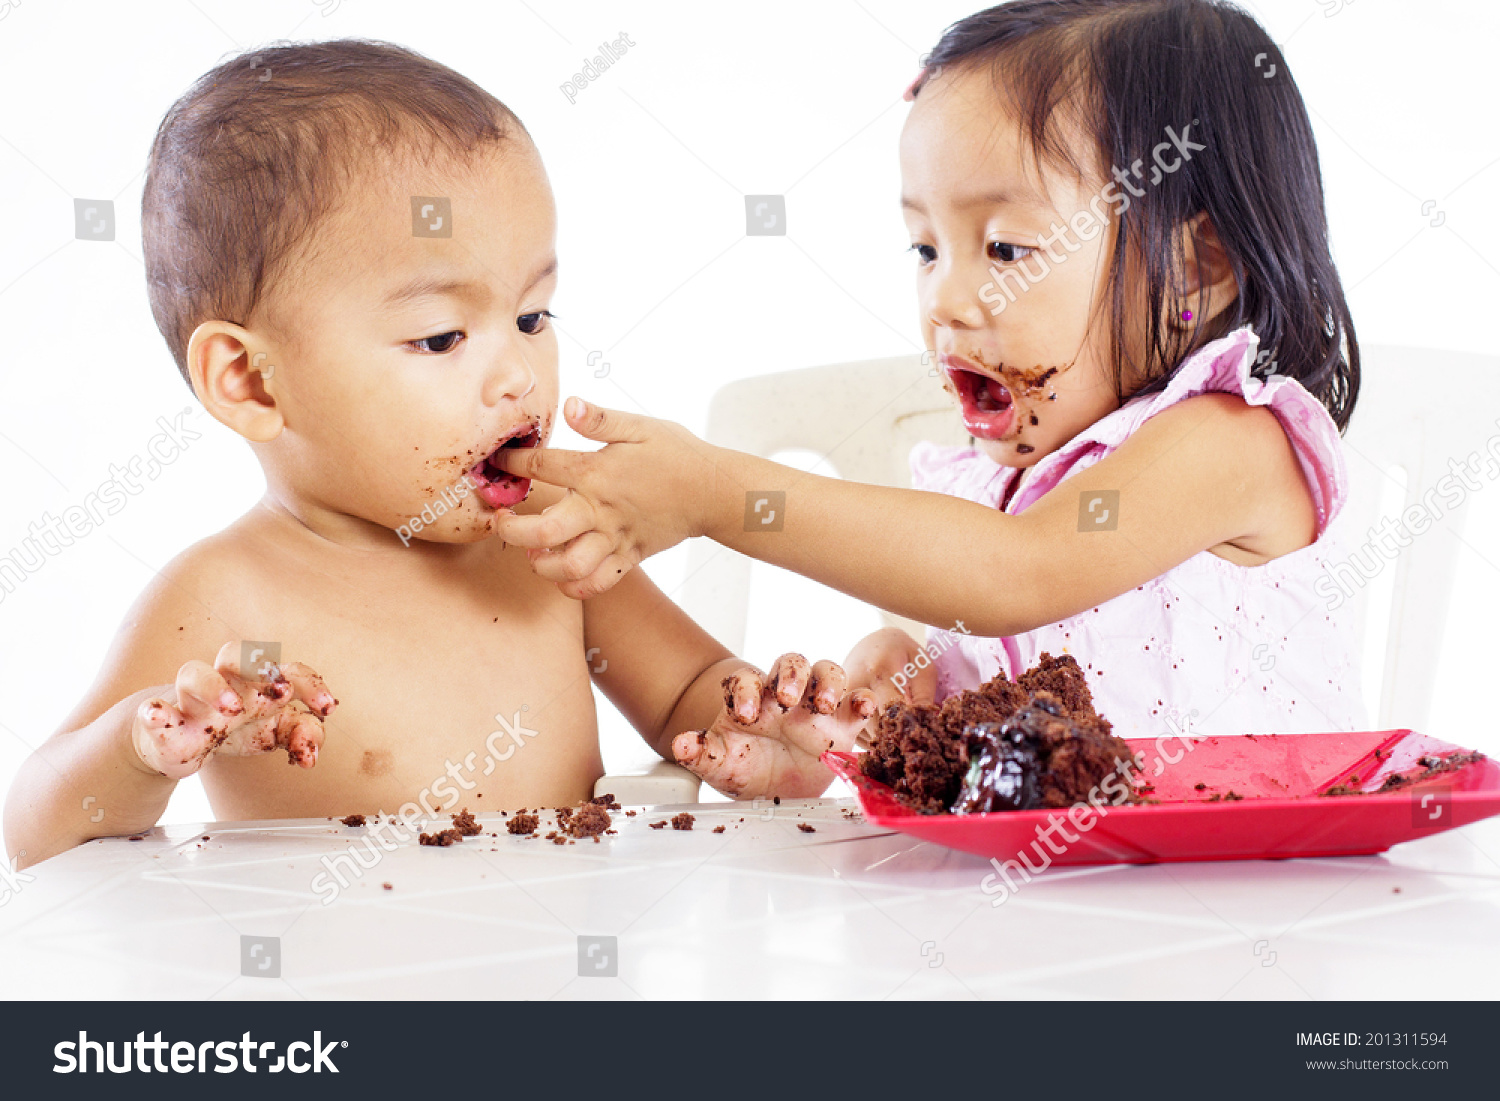 girl feeding boy